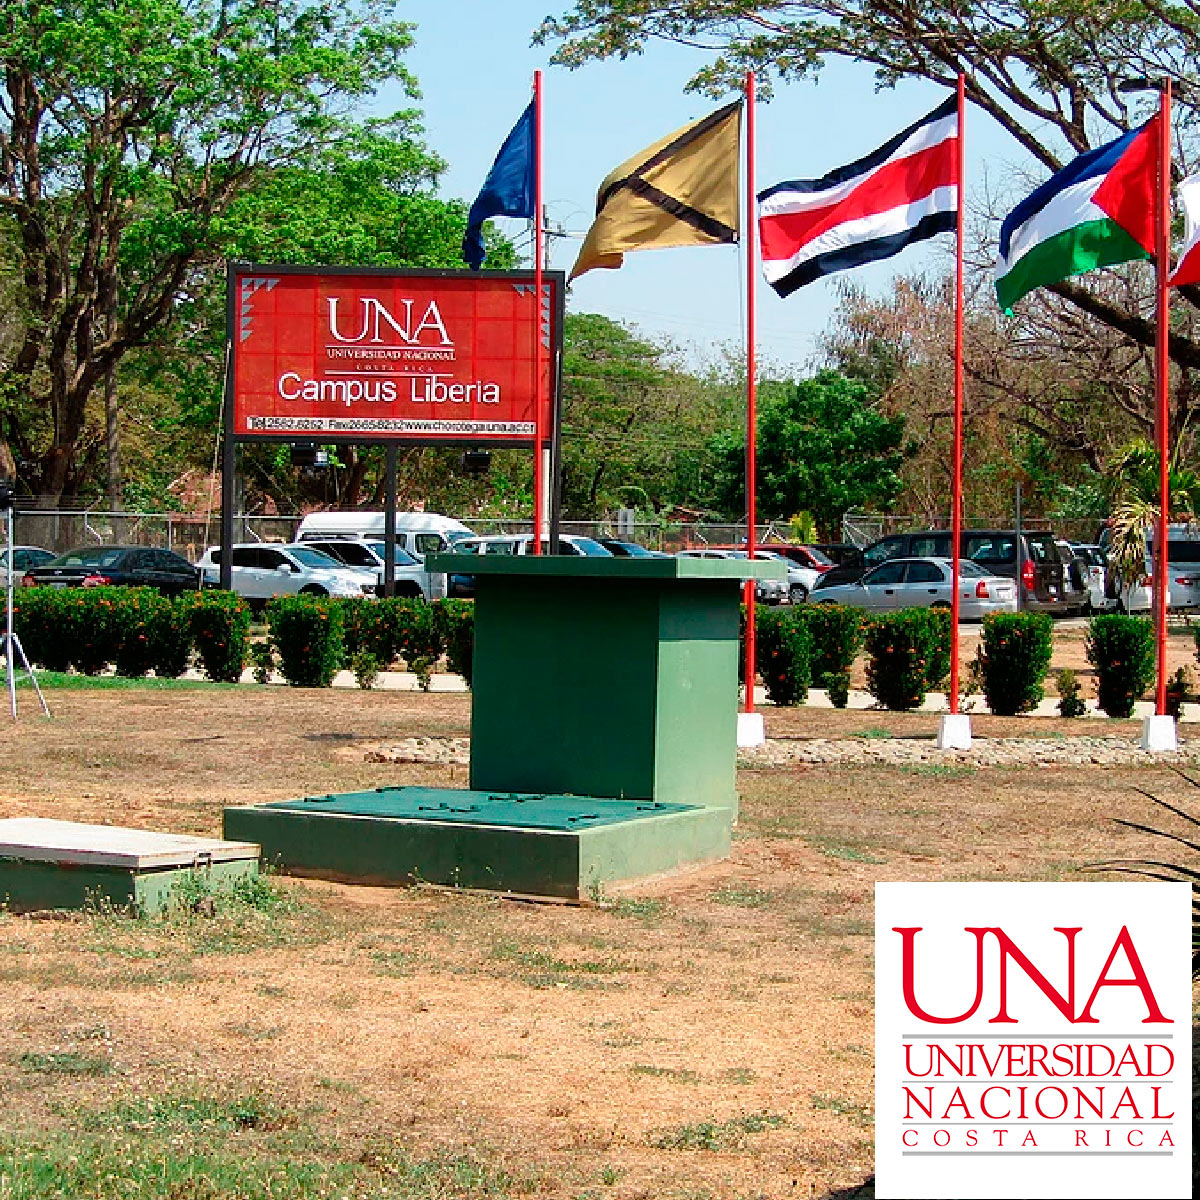 Universidad Nacional de Costa Rica (UNA)